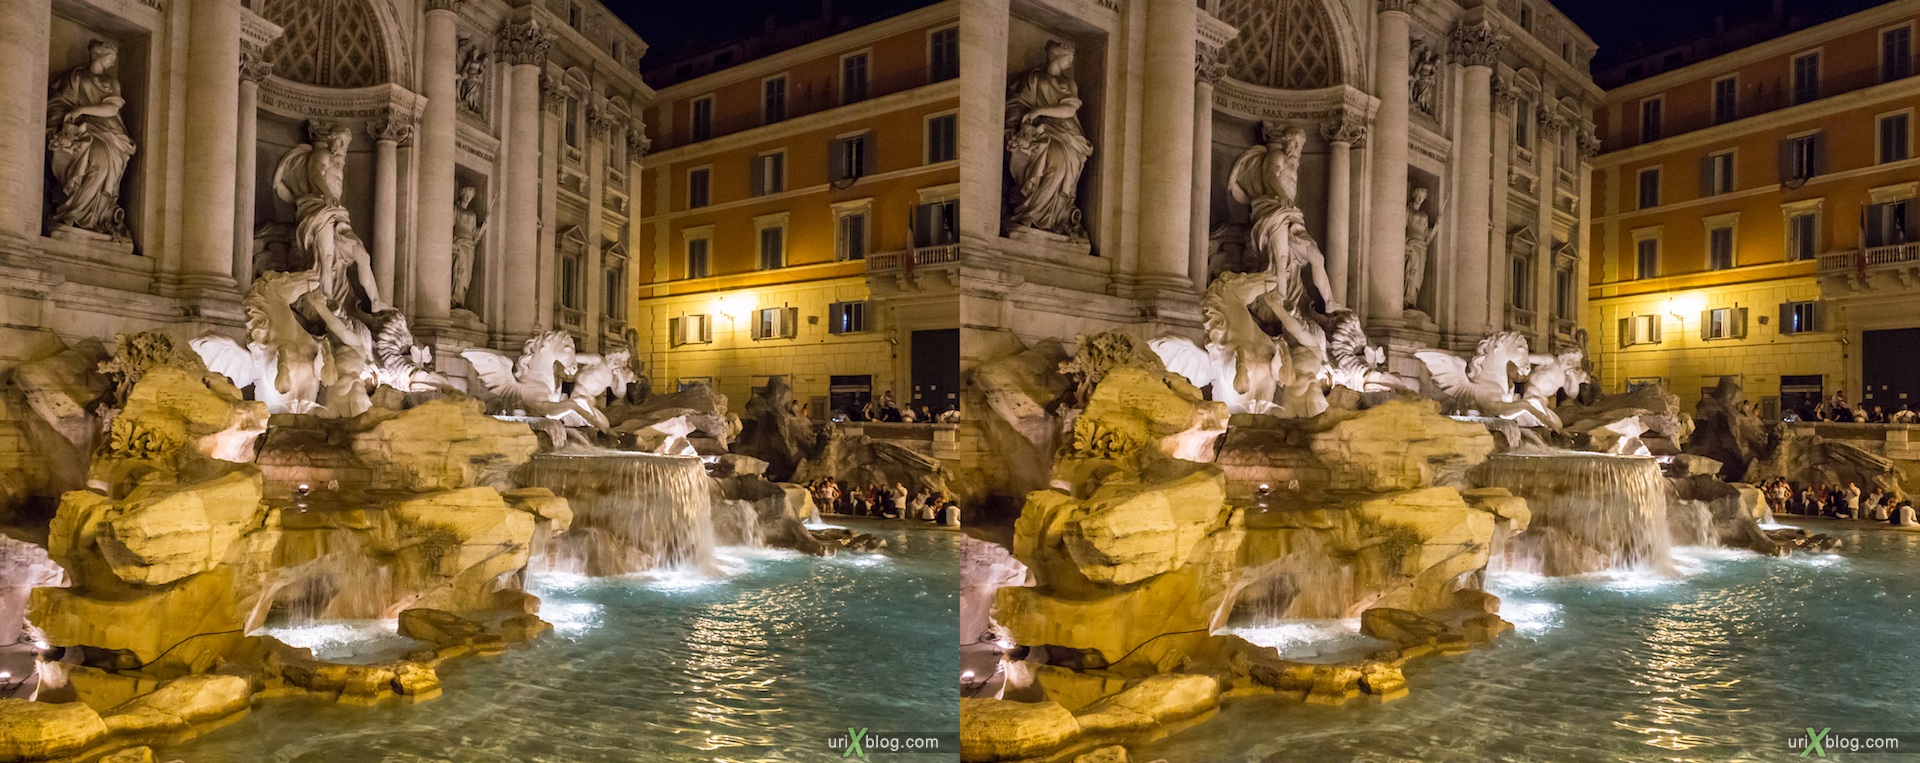 2012, фонтан Треви, Рим, Италия, 3D, перекрёстные стереопары, стерео, стереопара, стереопары